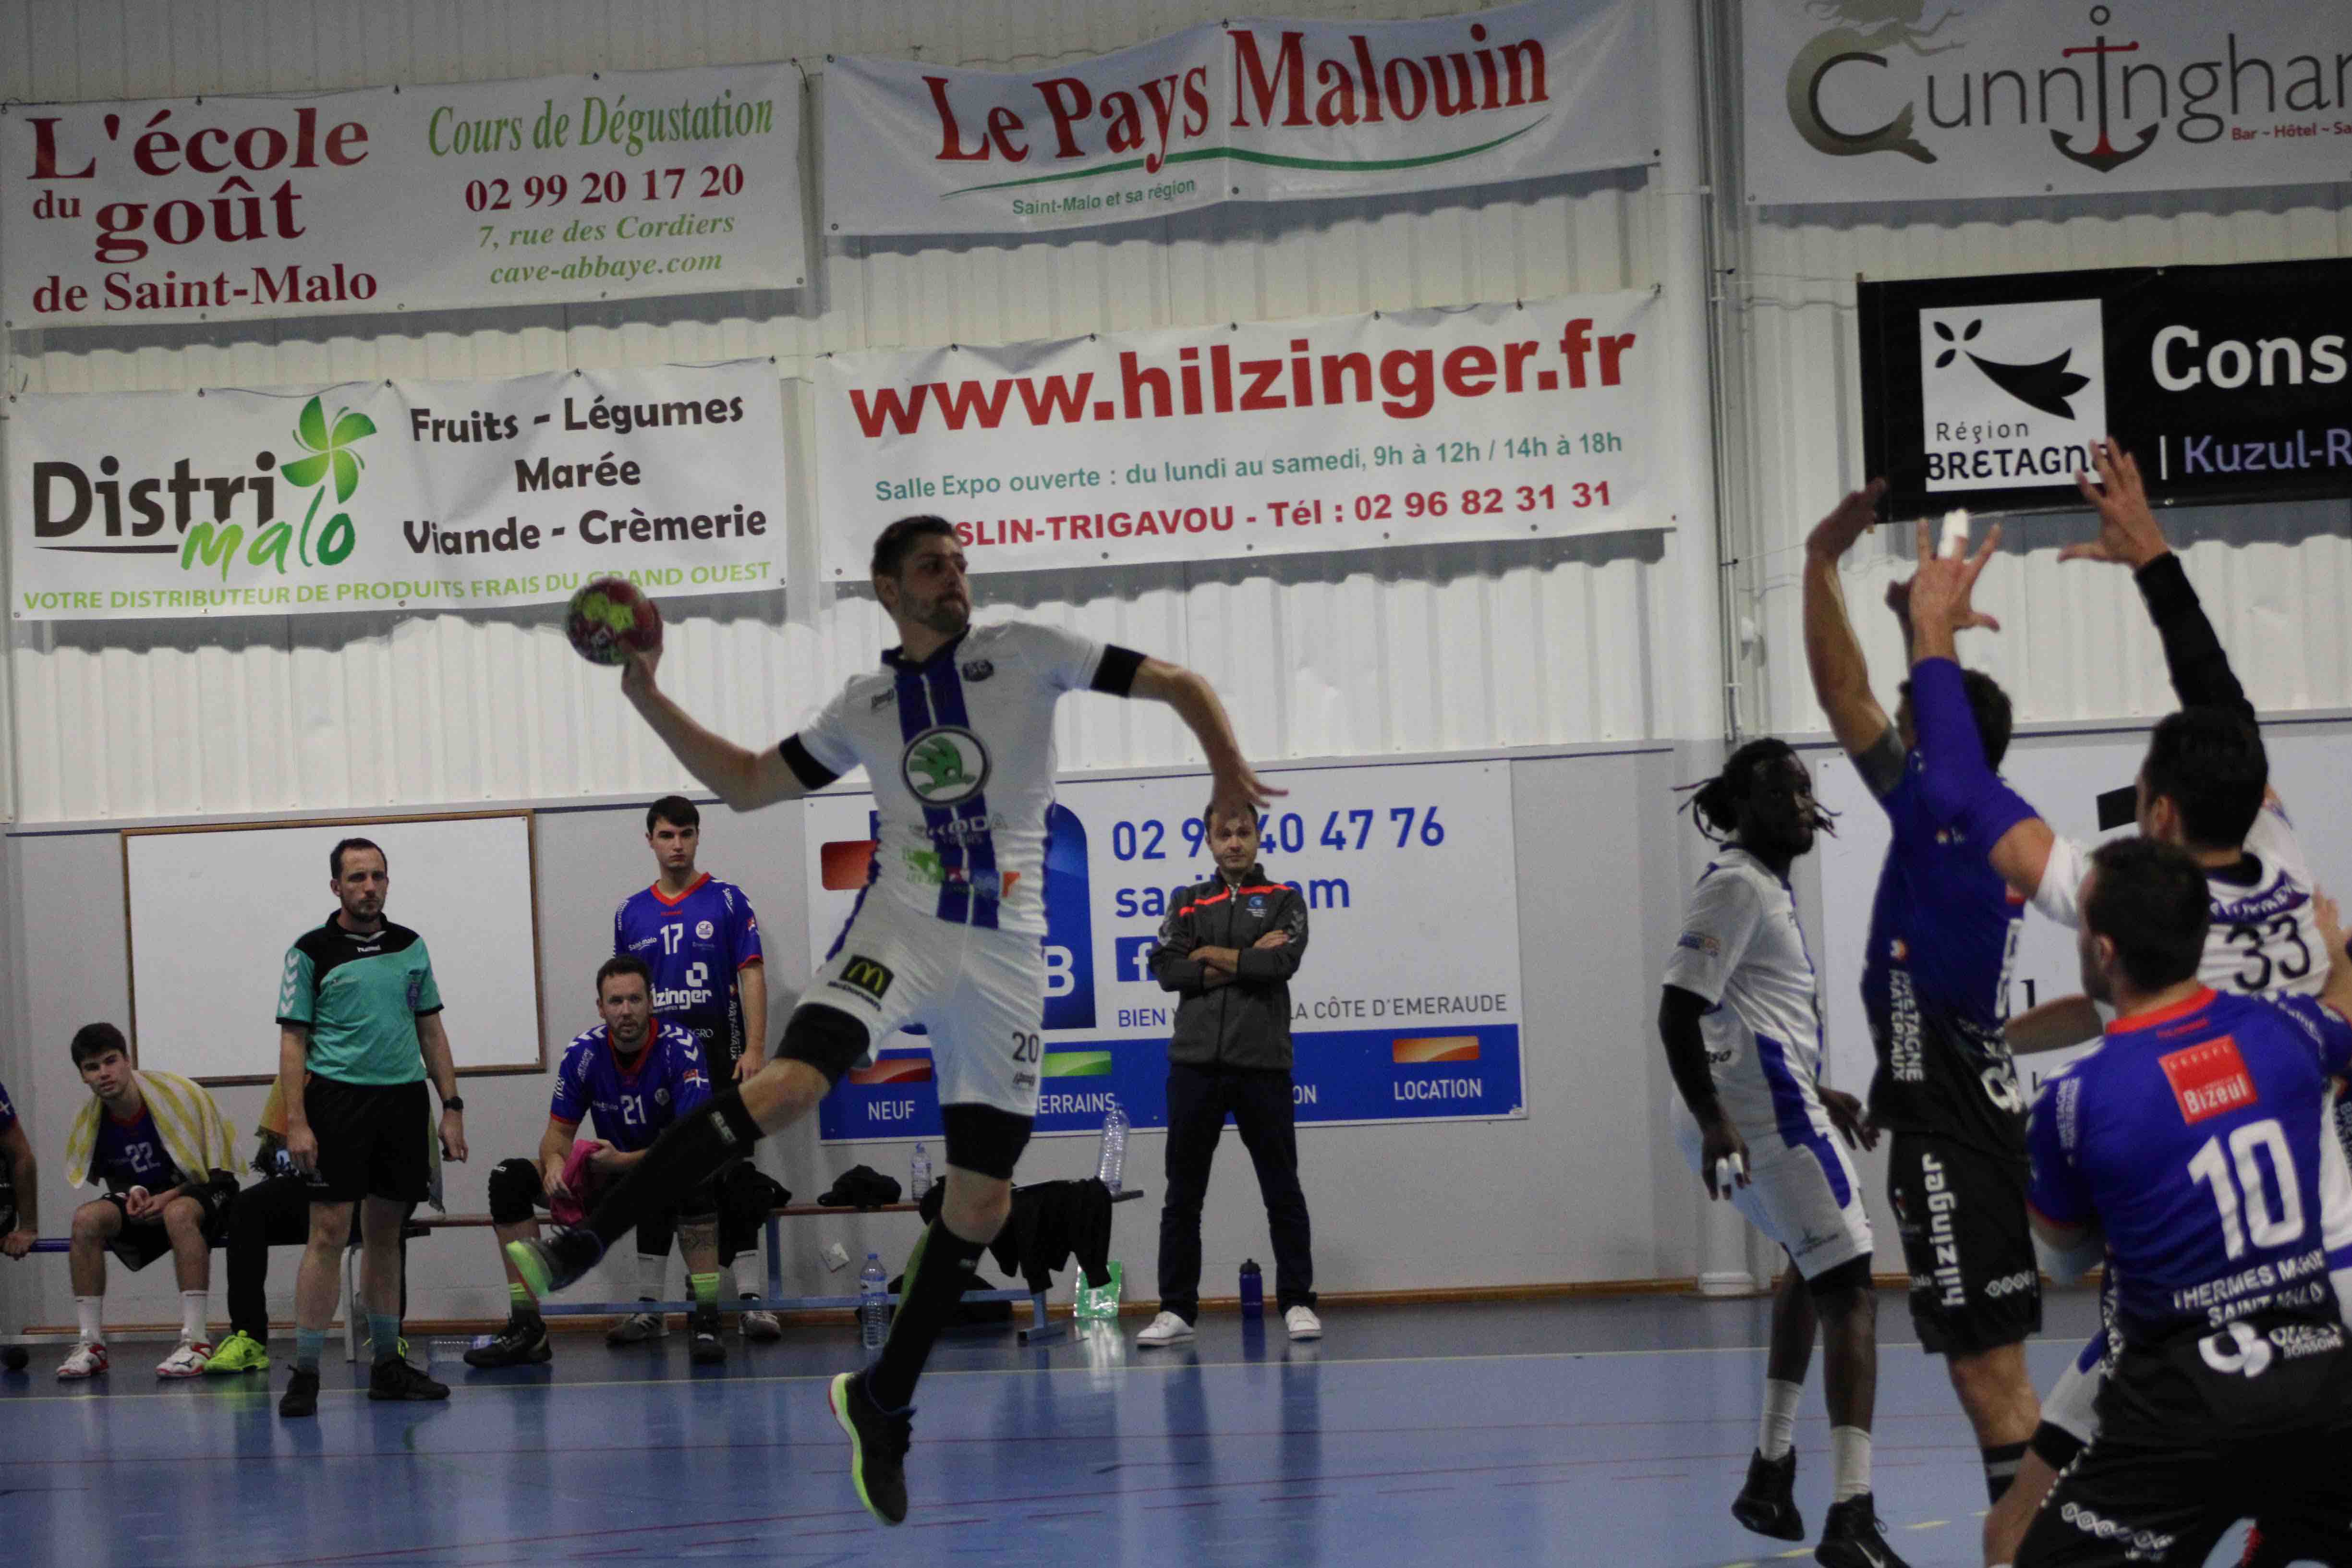 2019nov23 CJF hb _ SC handball (81)